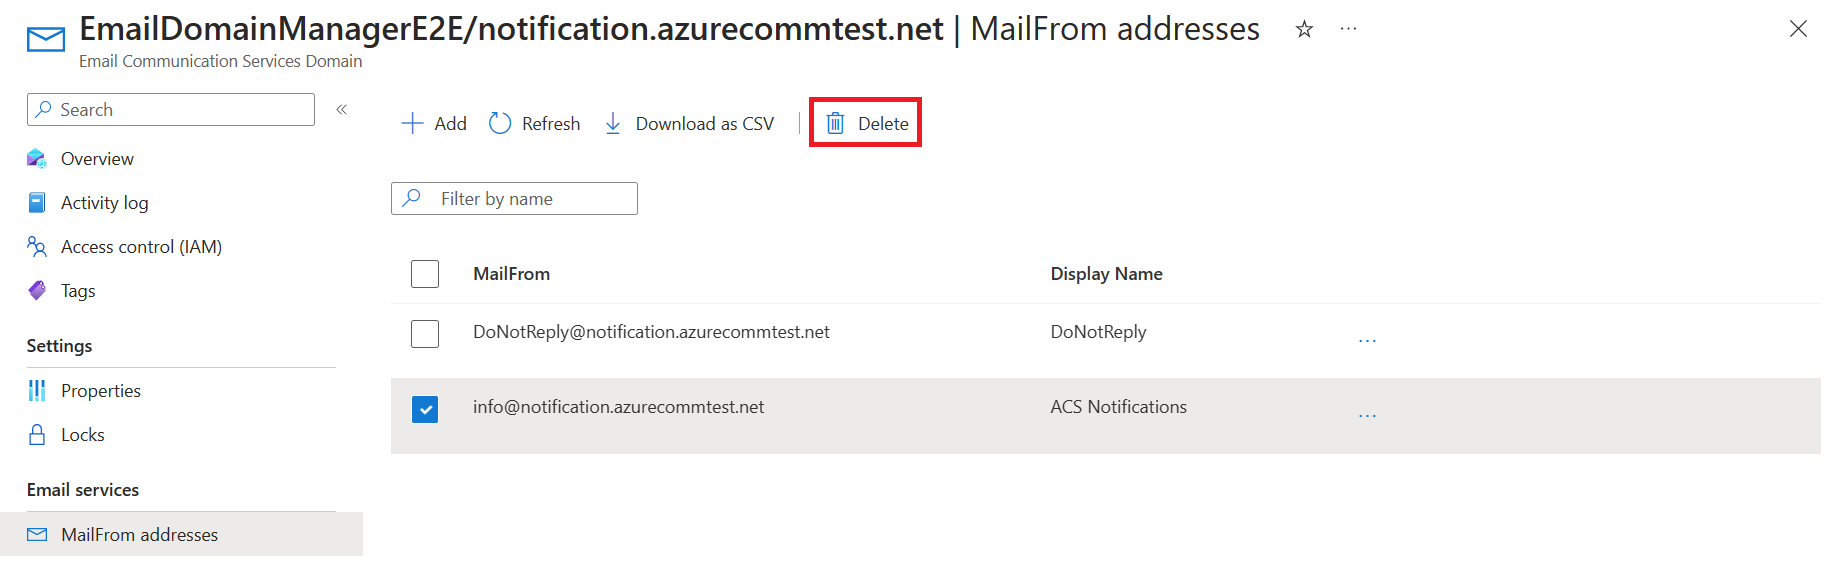 Capture d’écran montrant la liste d’adresses MailFrom avec suppression.